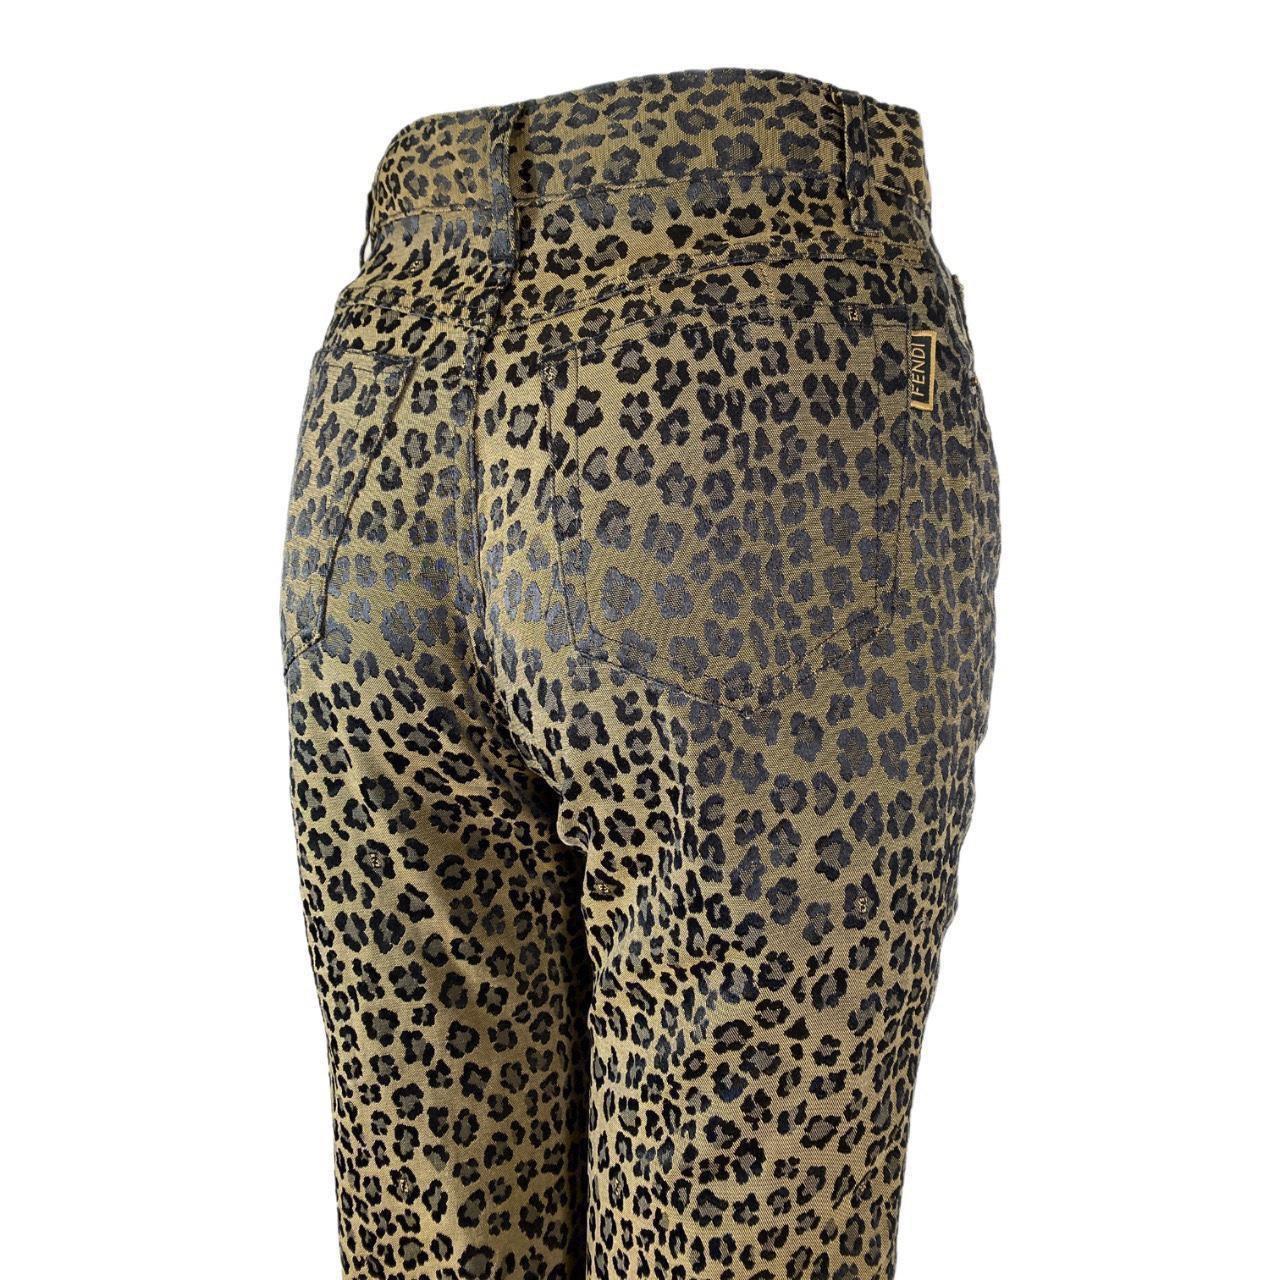 Fendi-Hose 

Leoparden-Jeans mit hoher Taille

Klassisches Zucca Leopardenmuster

ZUSTAND: Dieser Artikel ist ein altes/vorgetragenes Stück, so dass einige Anzeichen von natürlichem Verschleiß und Alter zu erwarten sind. Jedoch guter